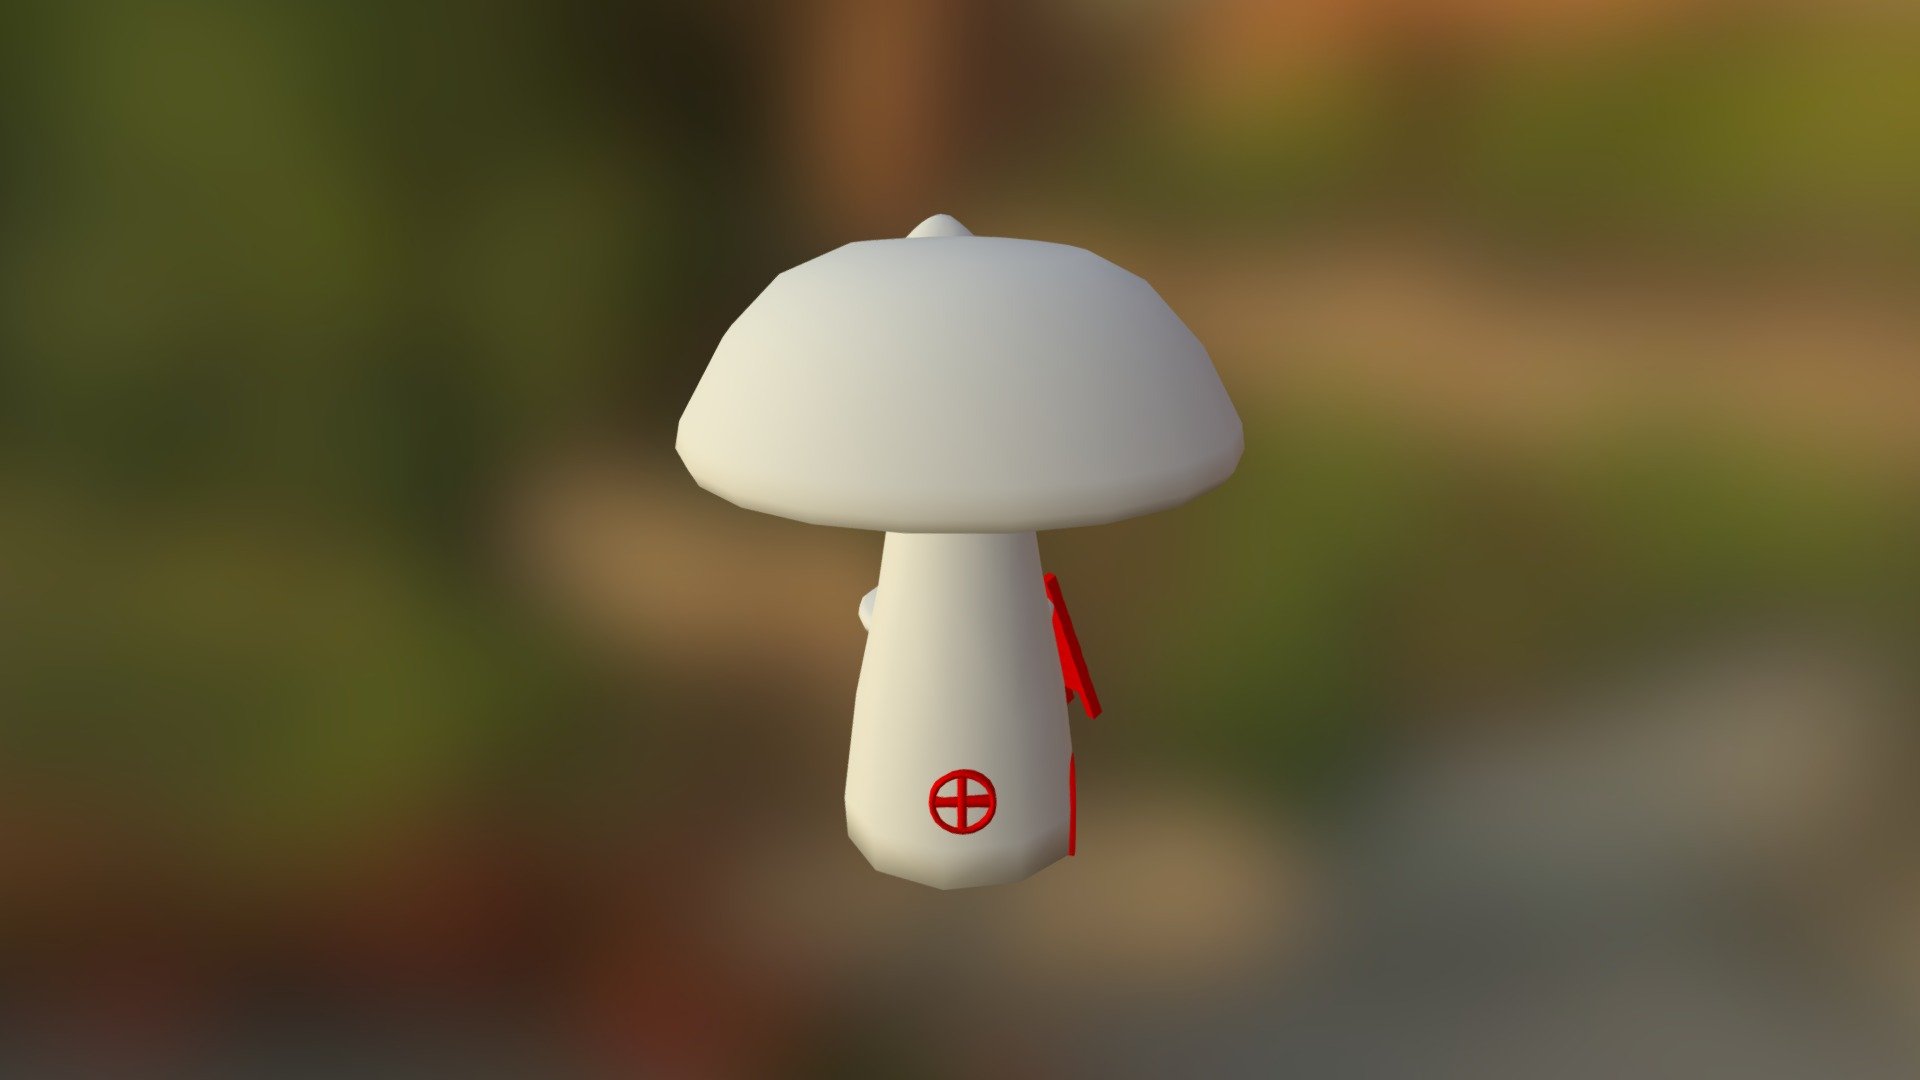 mushroom house - 3D model by flandre 3d model